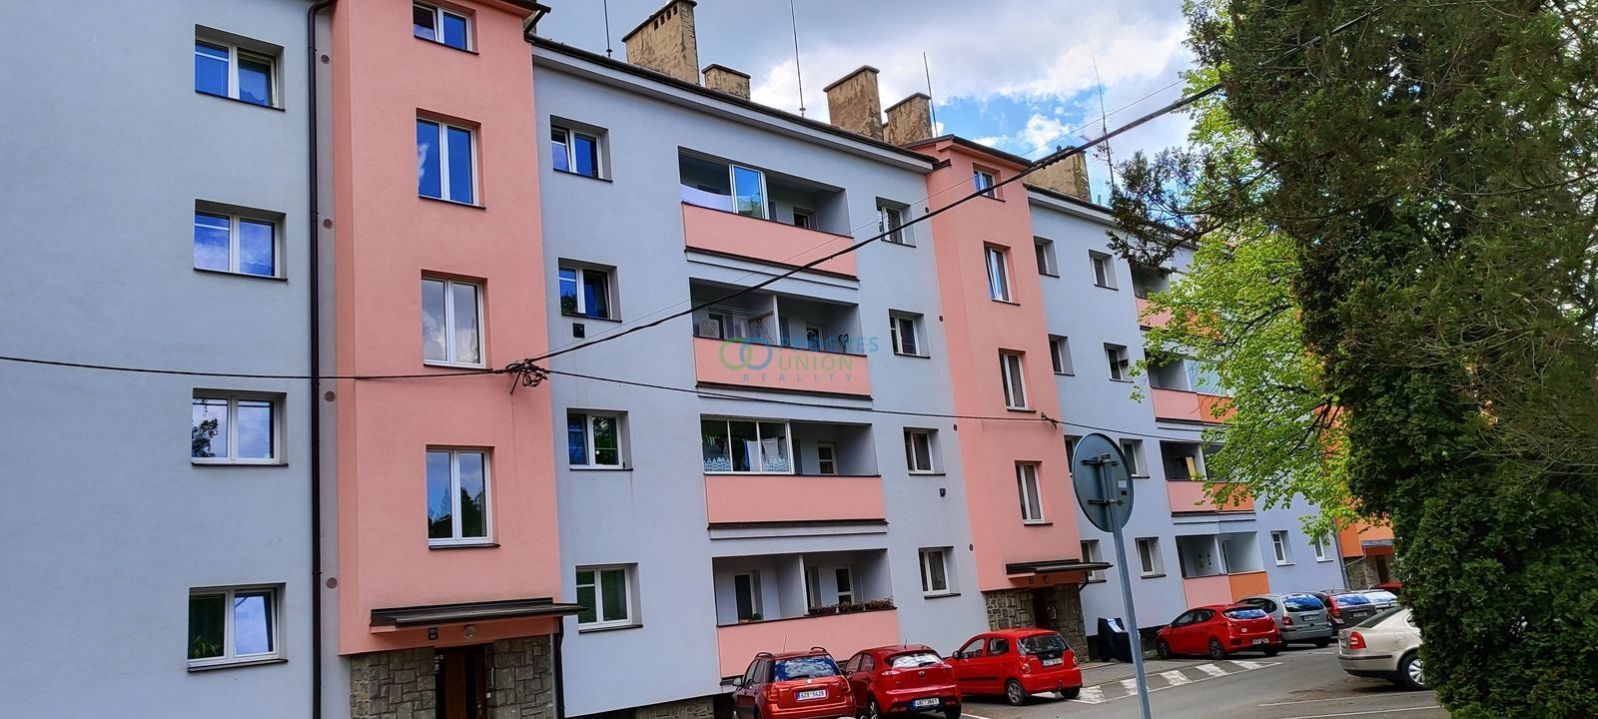 Nabízíme k prodeji exklusivní byt 2 + 1, 73 m2, v atraktivní lokalitě Křižná, Valašské Meziříčí